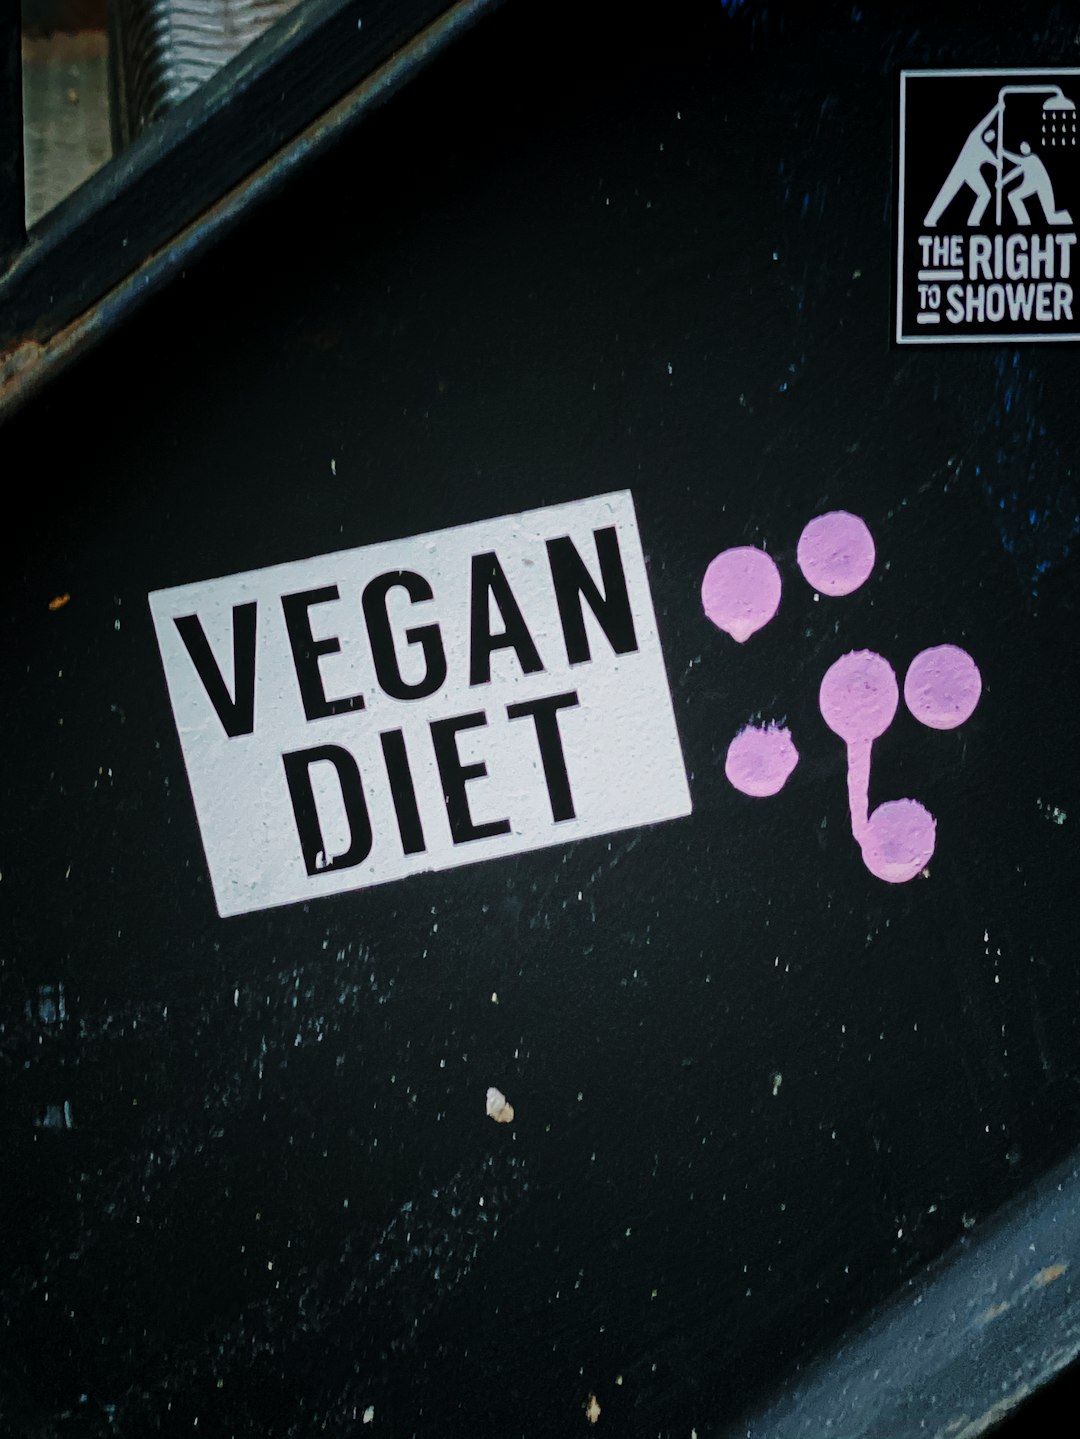 Vegan Diet signage